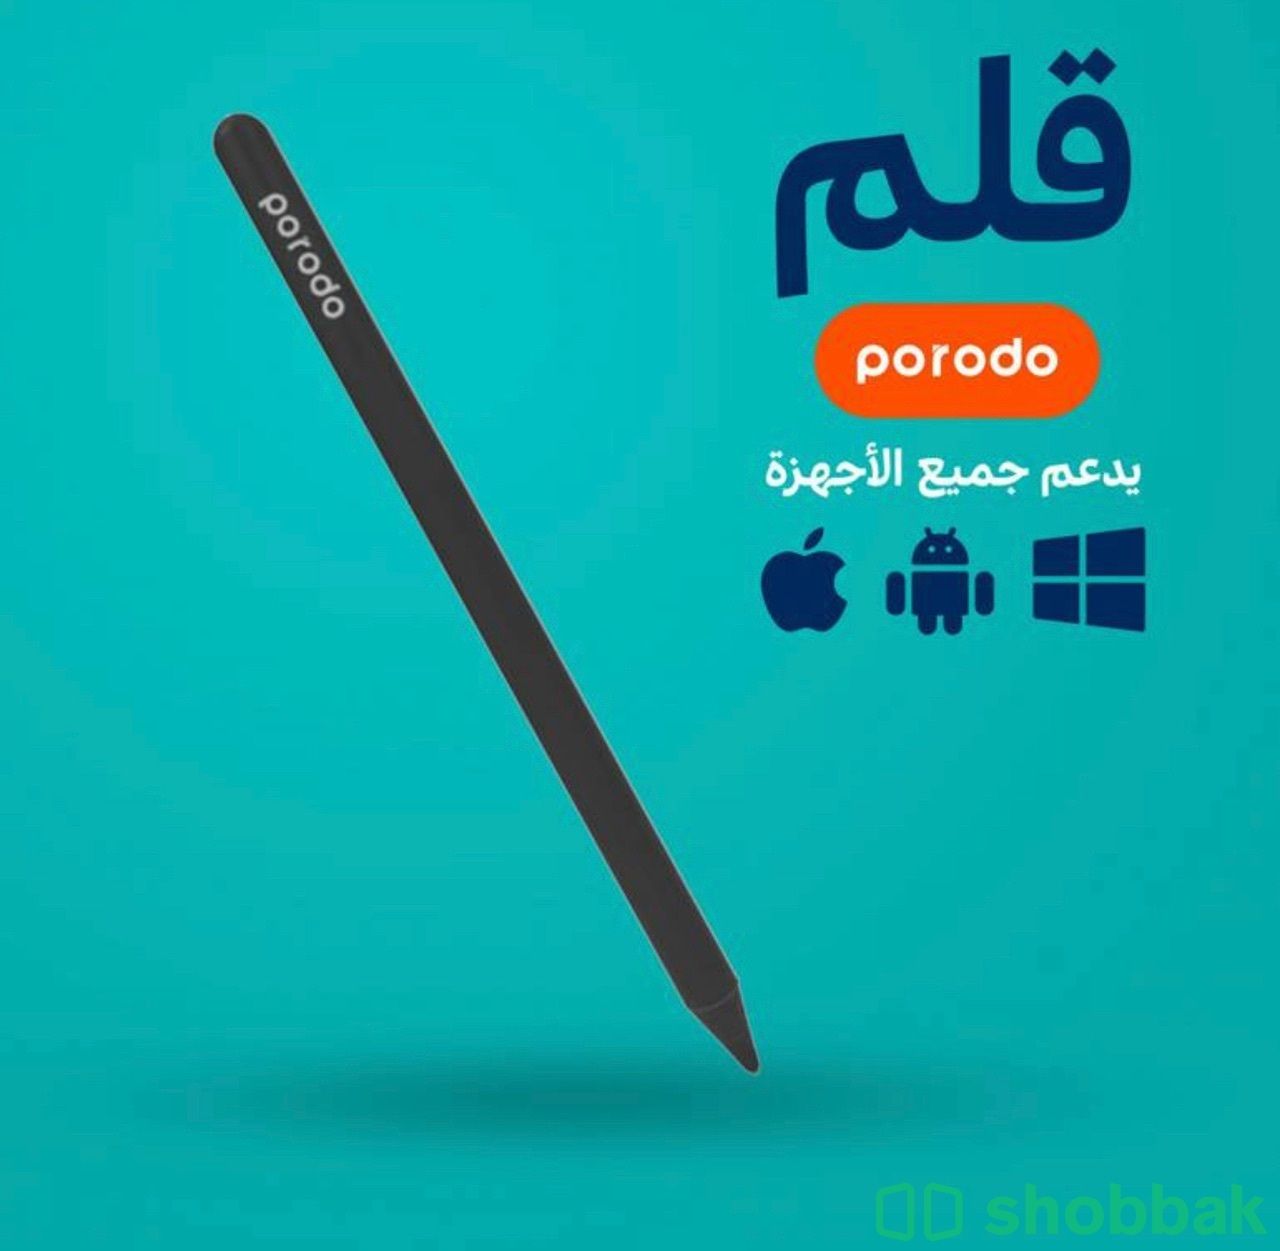 قلم porodo - اسود  شباك السعودية